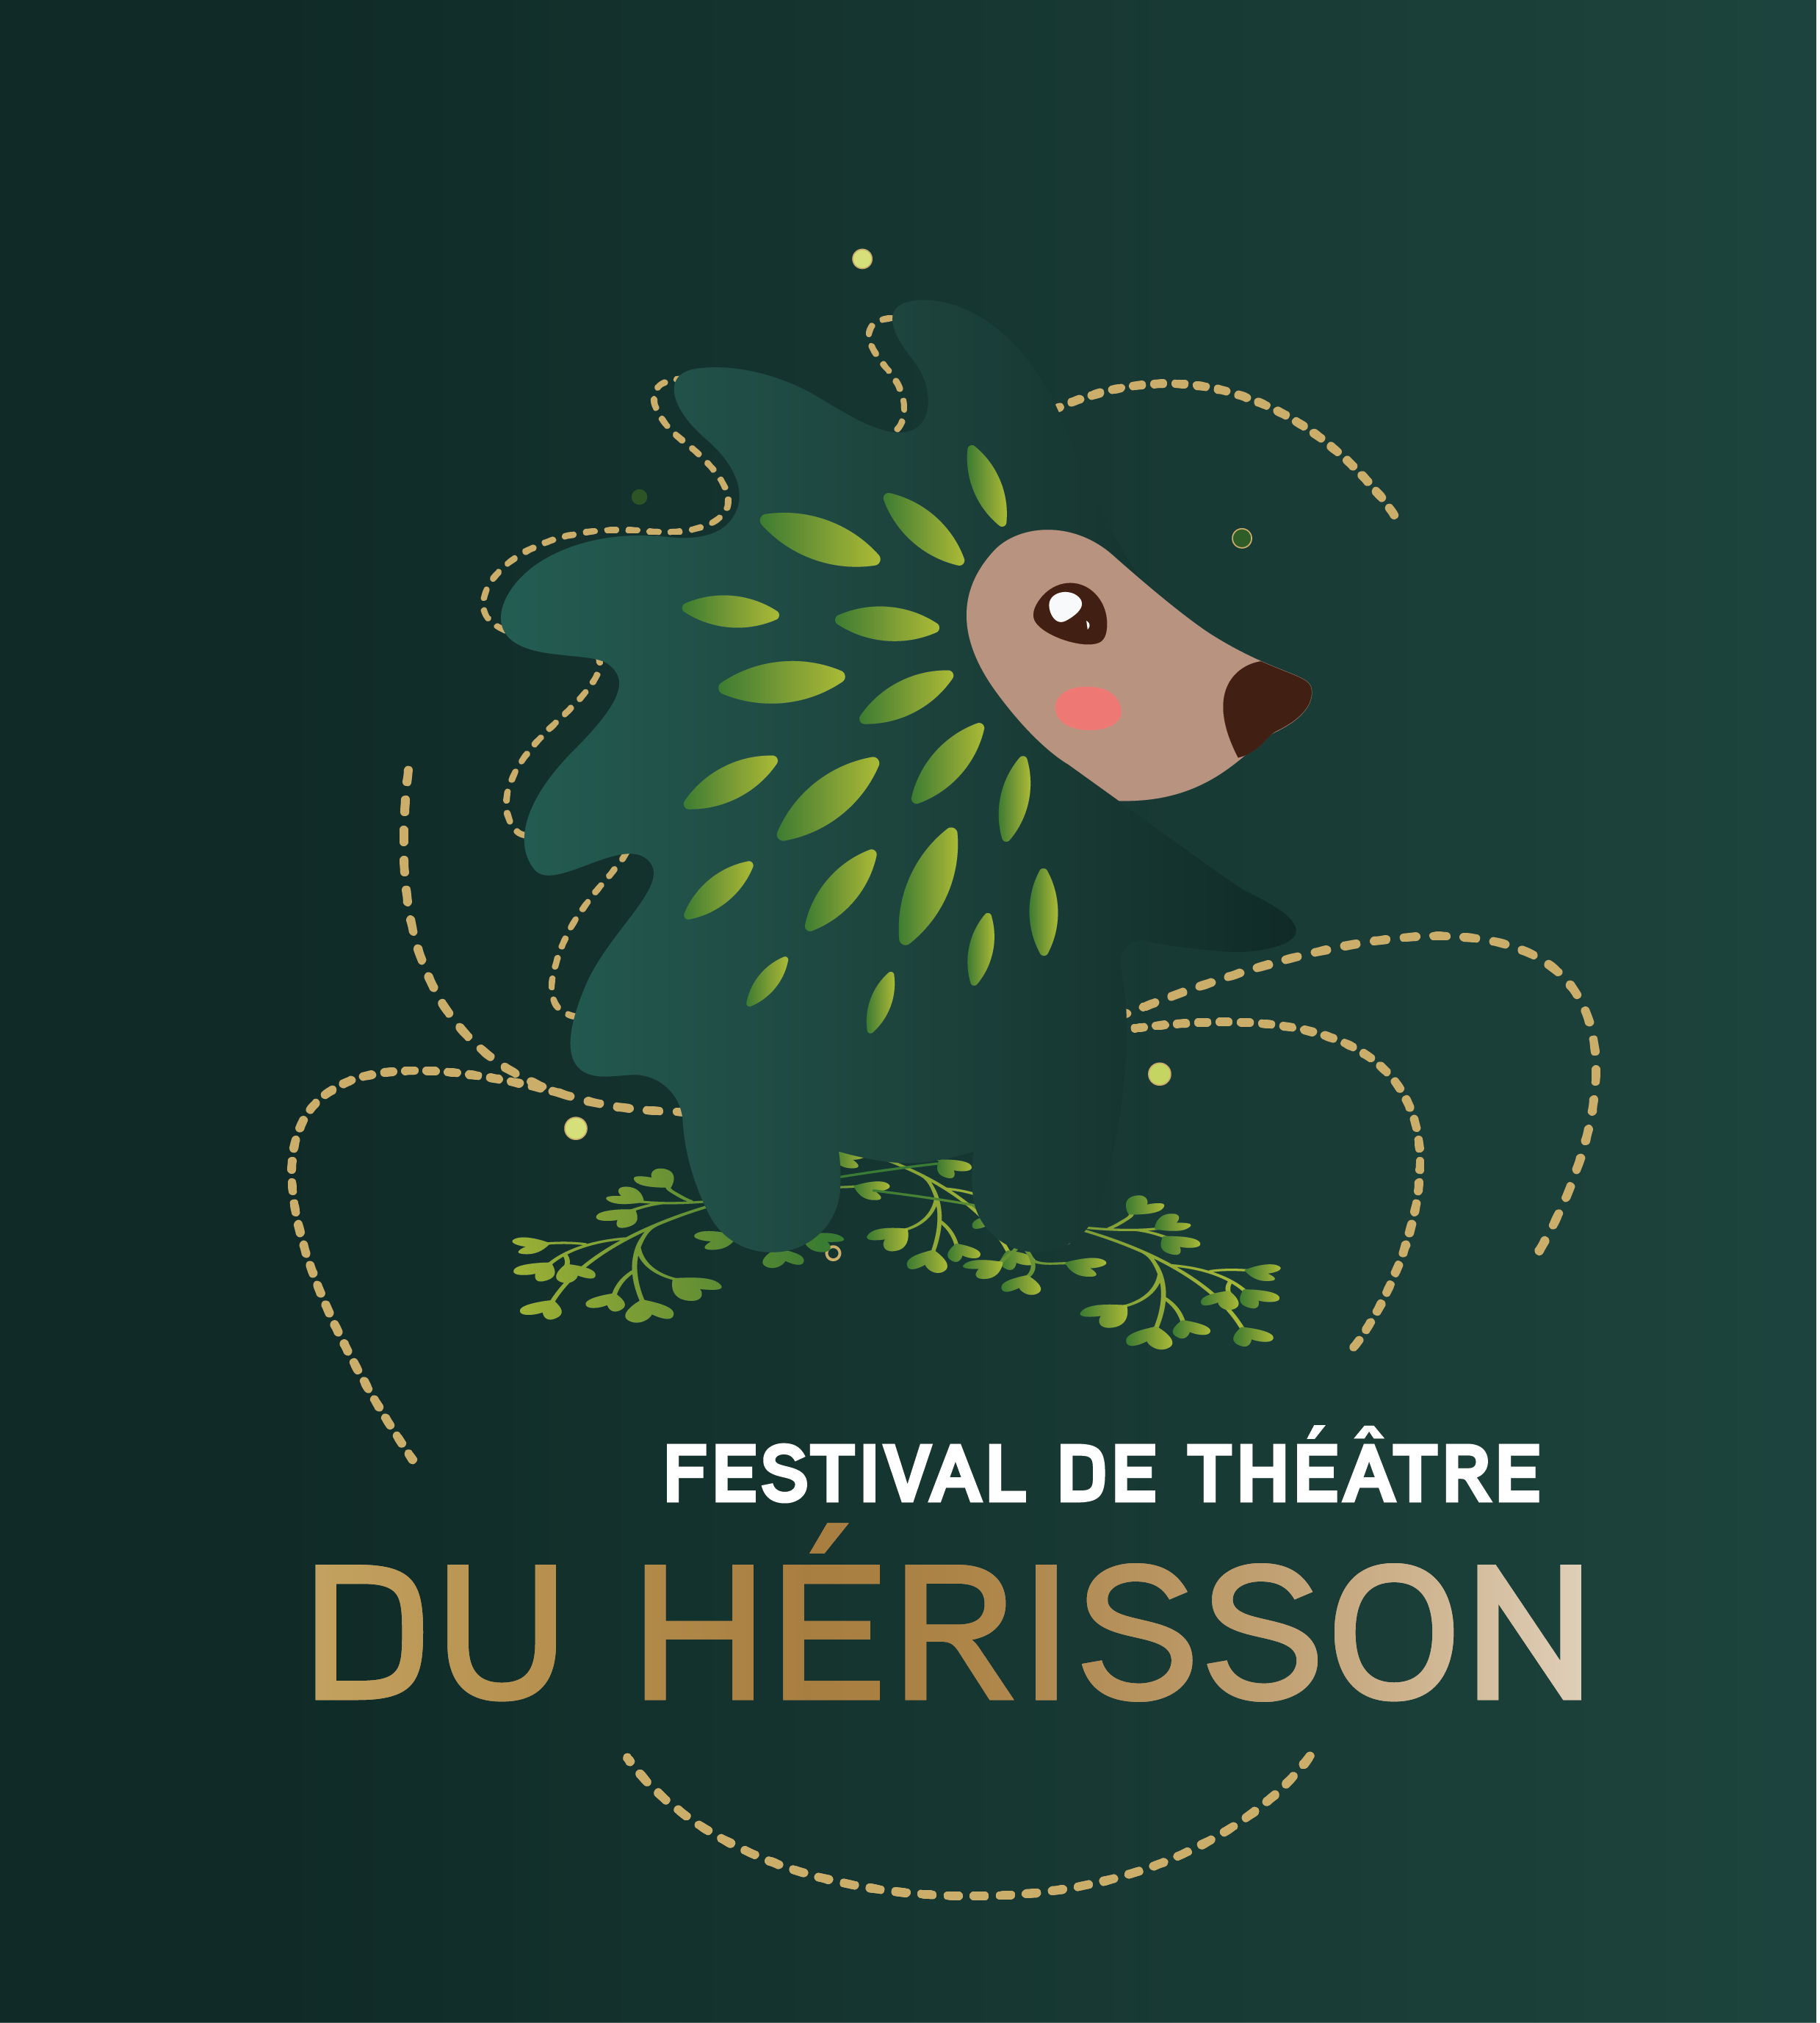 Festival de Théâtre du Hérisson, Logo anniversaire texte doré sur fond de dégradé vert avec la mascotte hérisson mignon